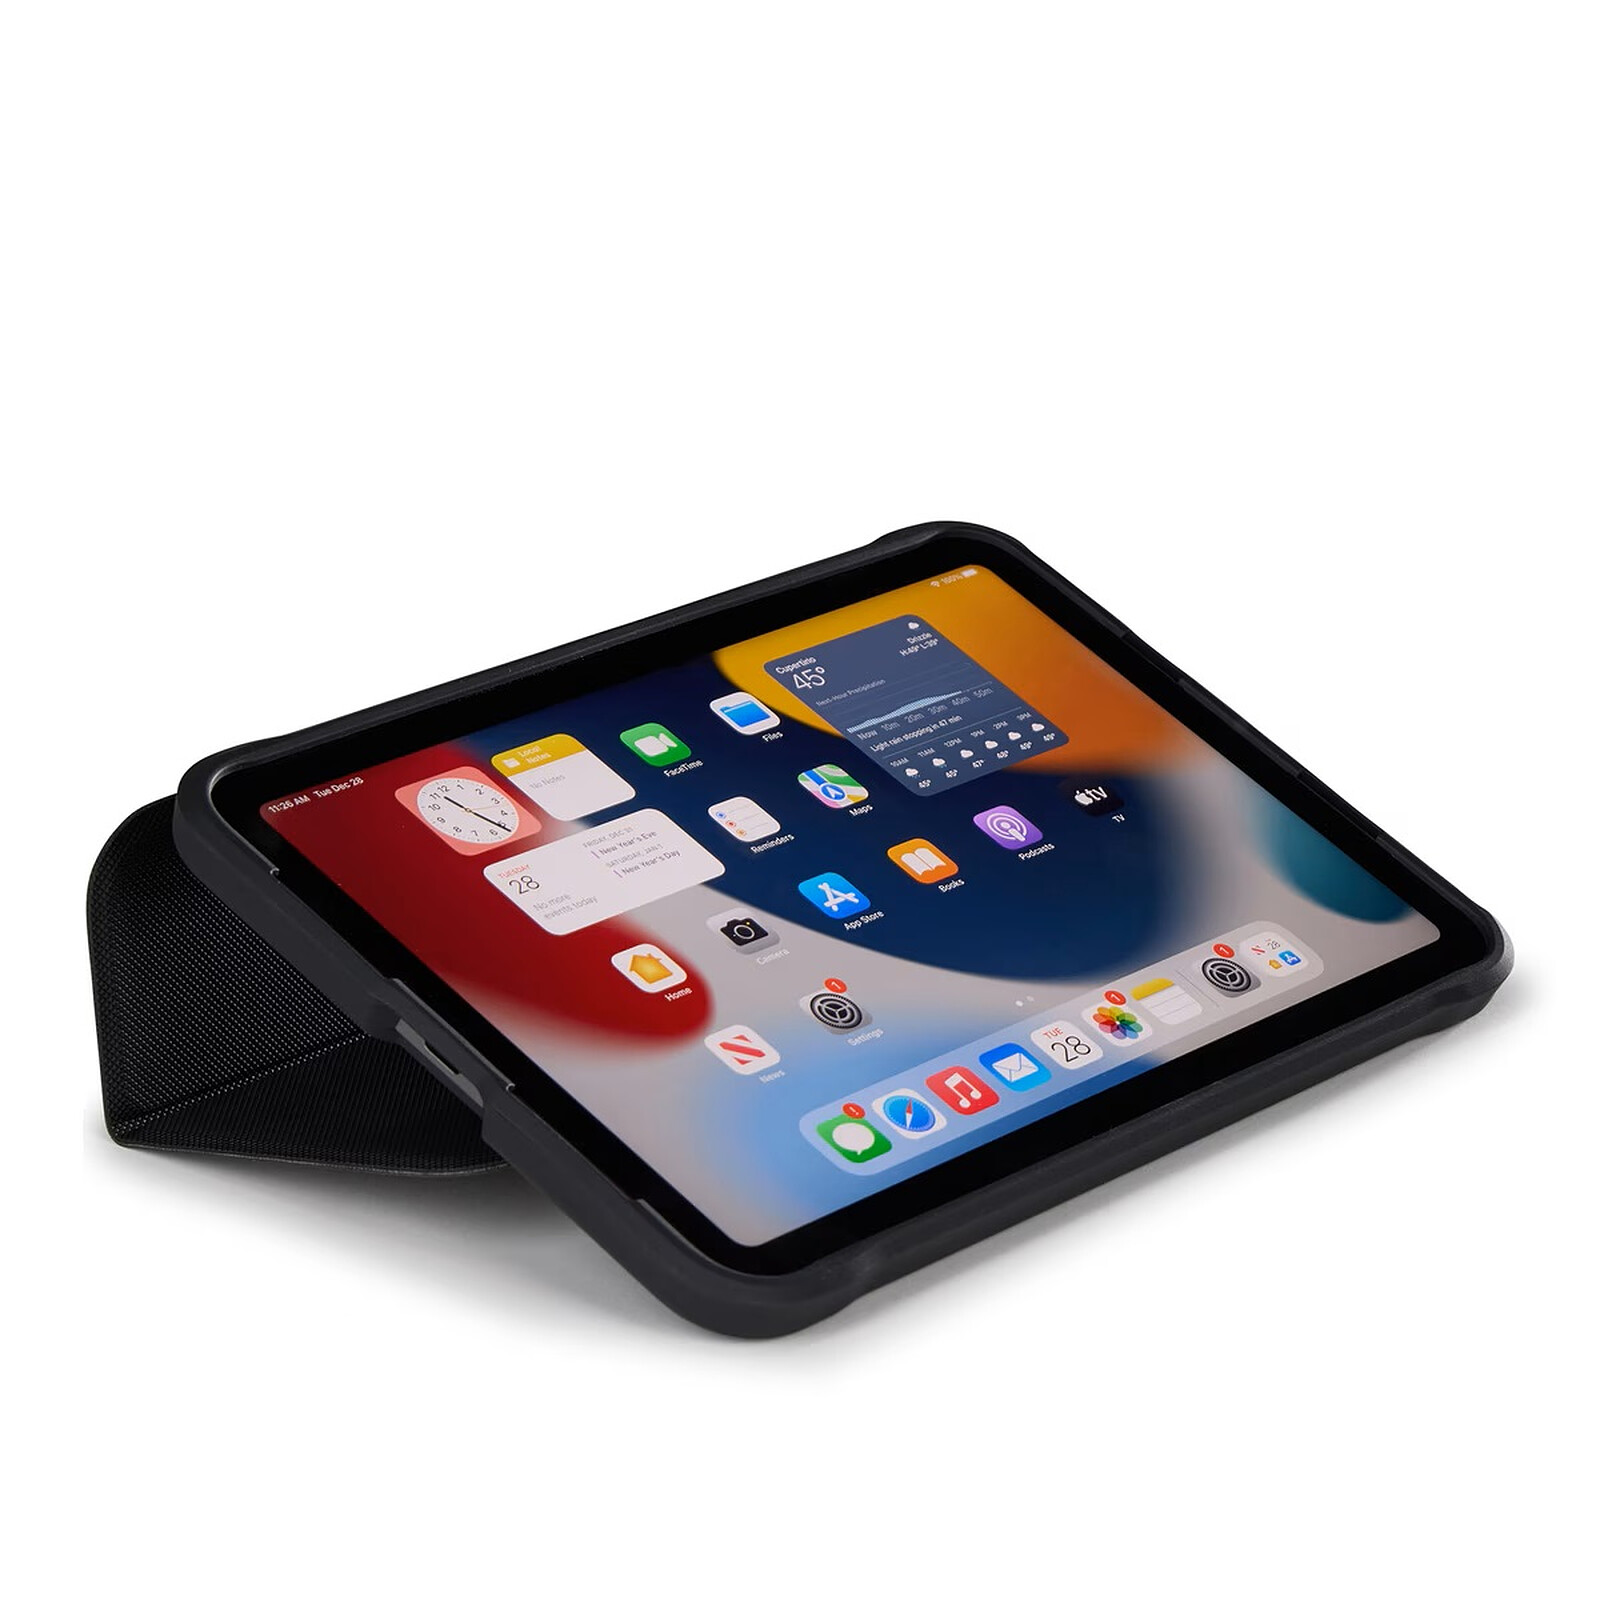 Protégez l'iPad Mini avec une housse protectrice Smart Cover